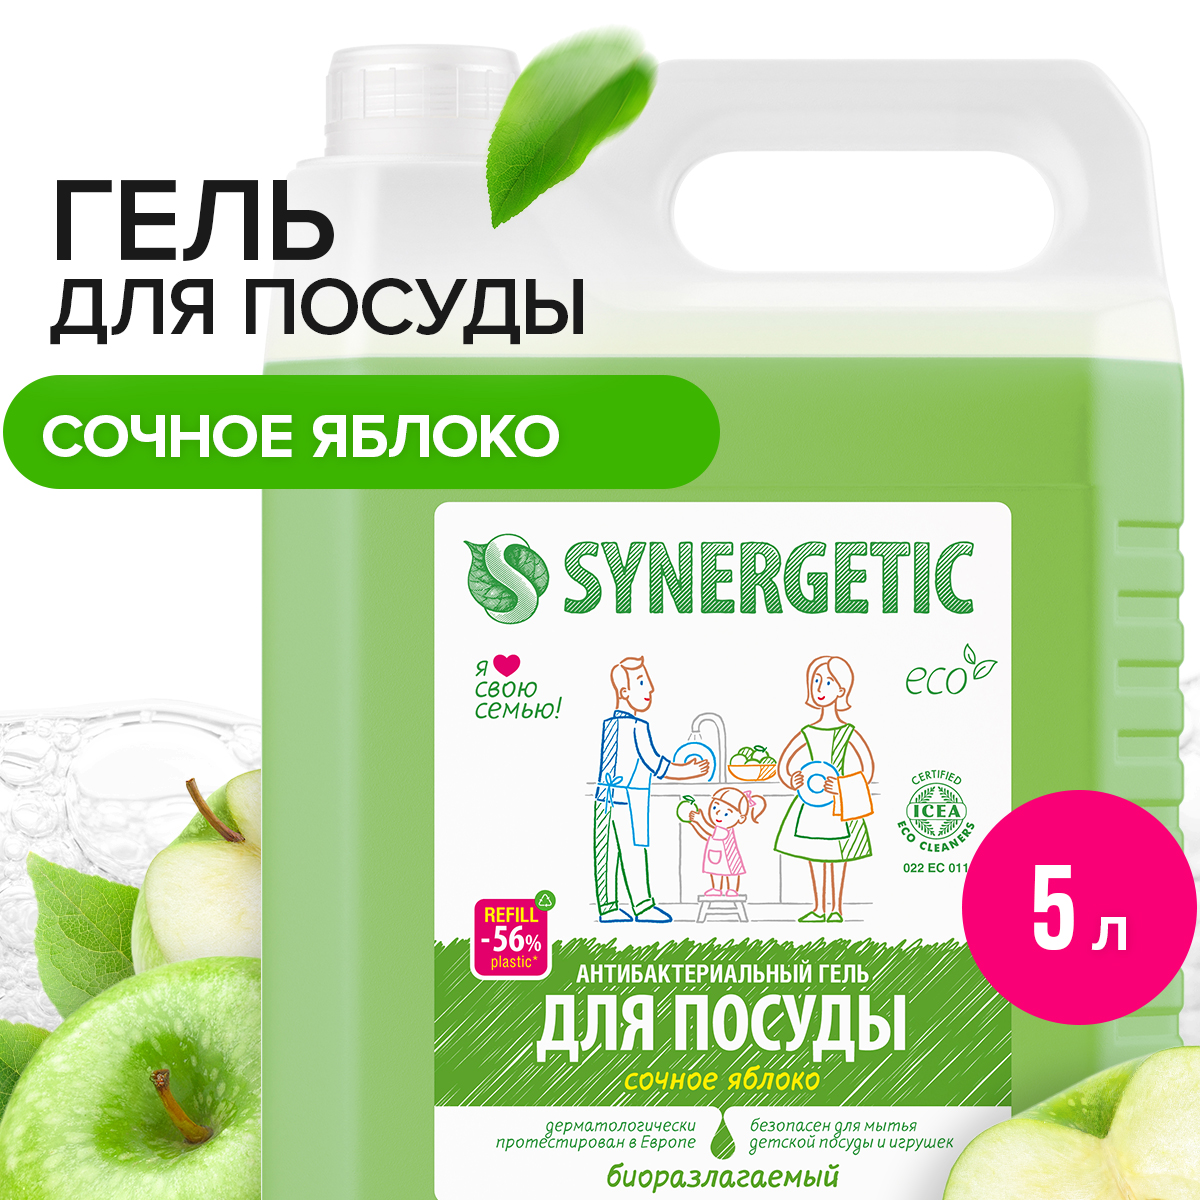 Средство для посуды, овощей и фруктов SYNERGETIC «Сочное яблоко» антибактериальное, 5 л - купить в Москве, цены на Мегамаркет | 100023872223